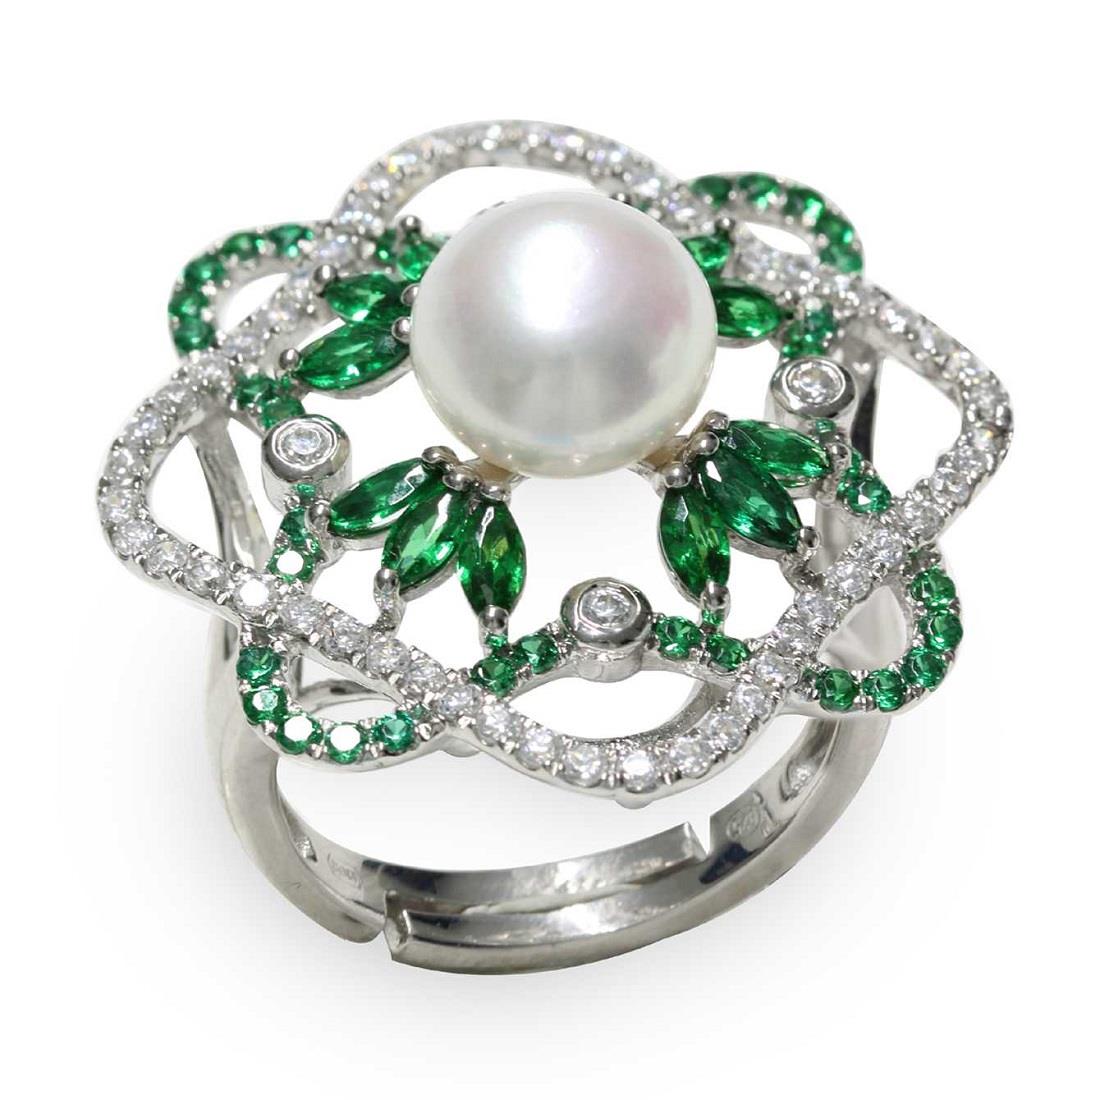 Anello con perla fresh water e zirconi bianchi e verdi - MAYUMI